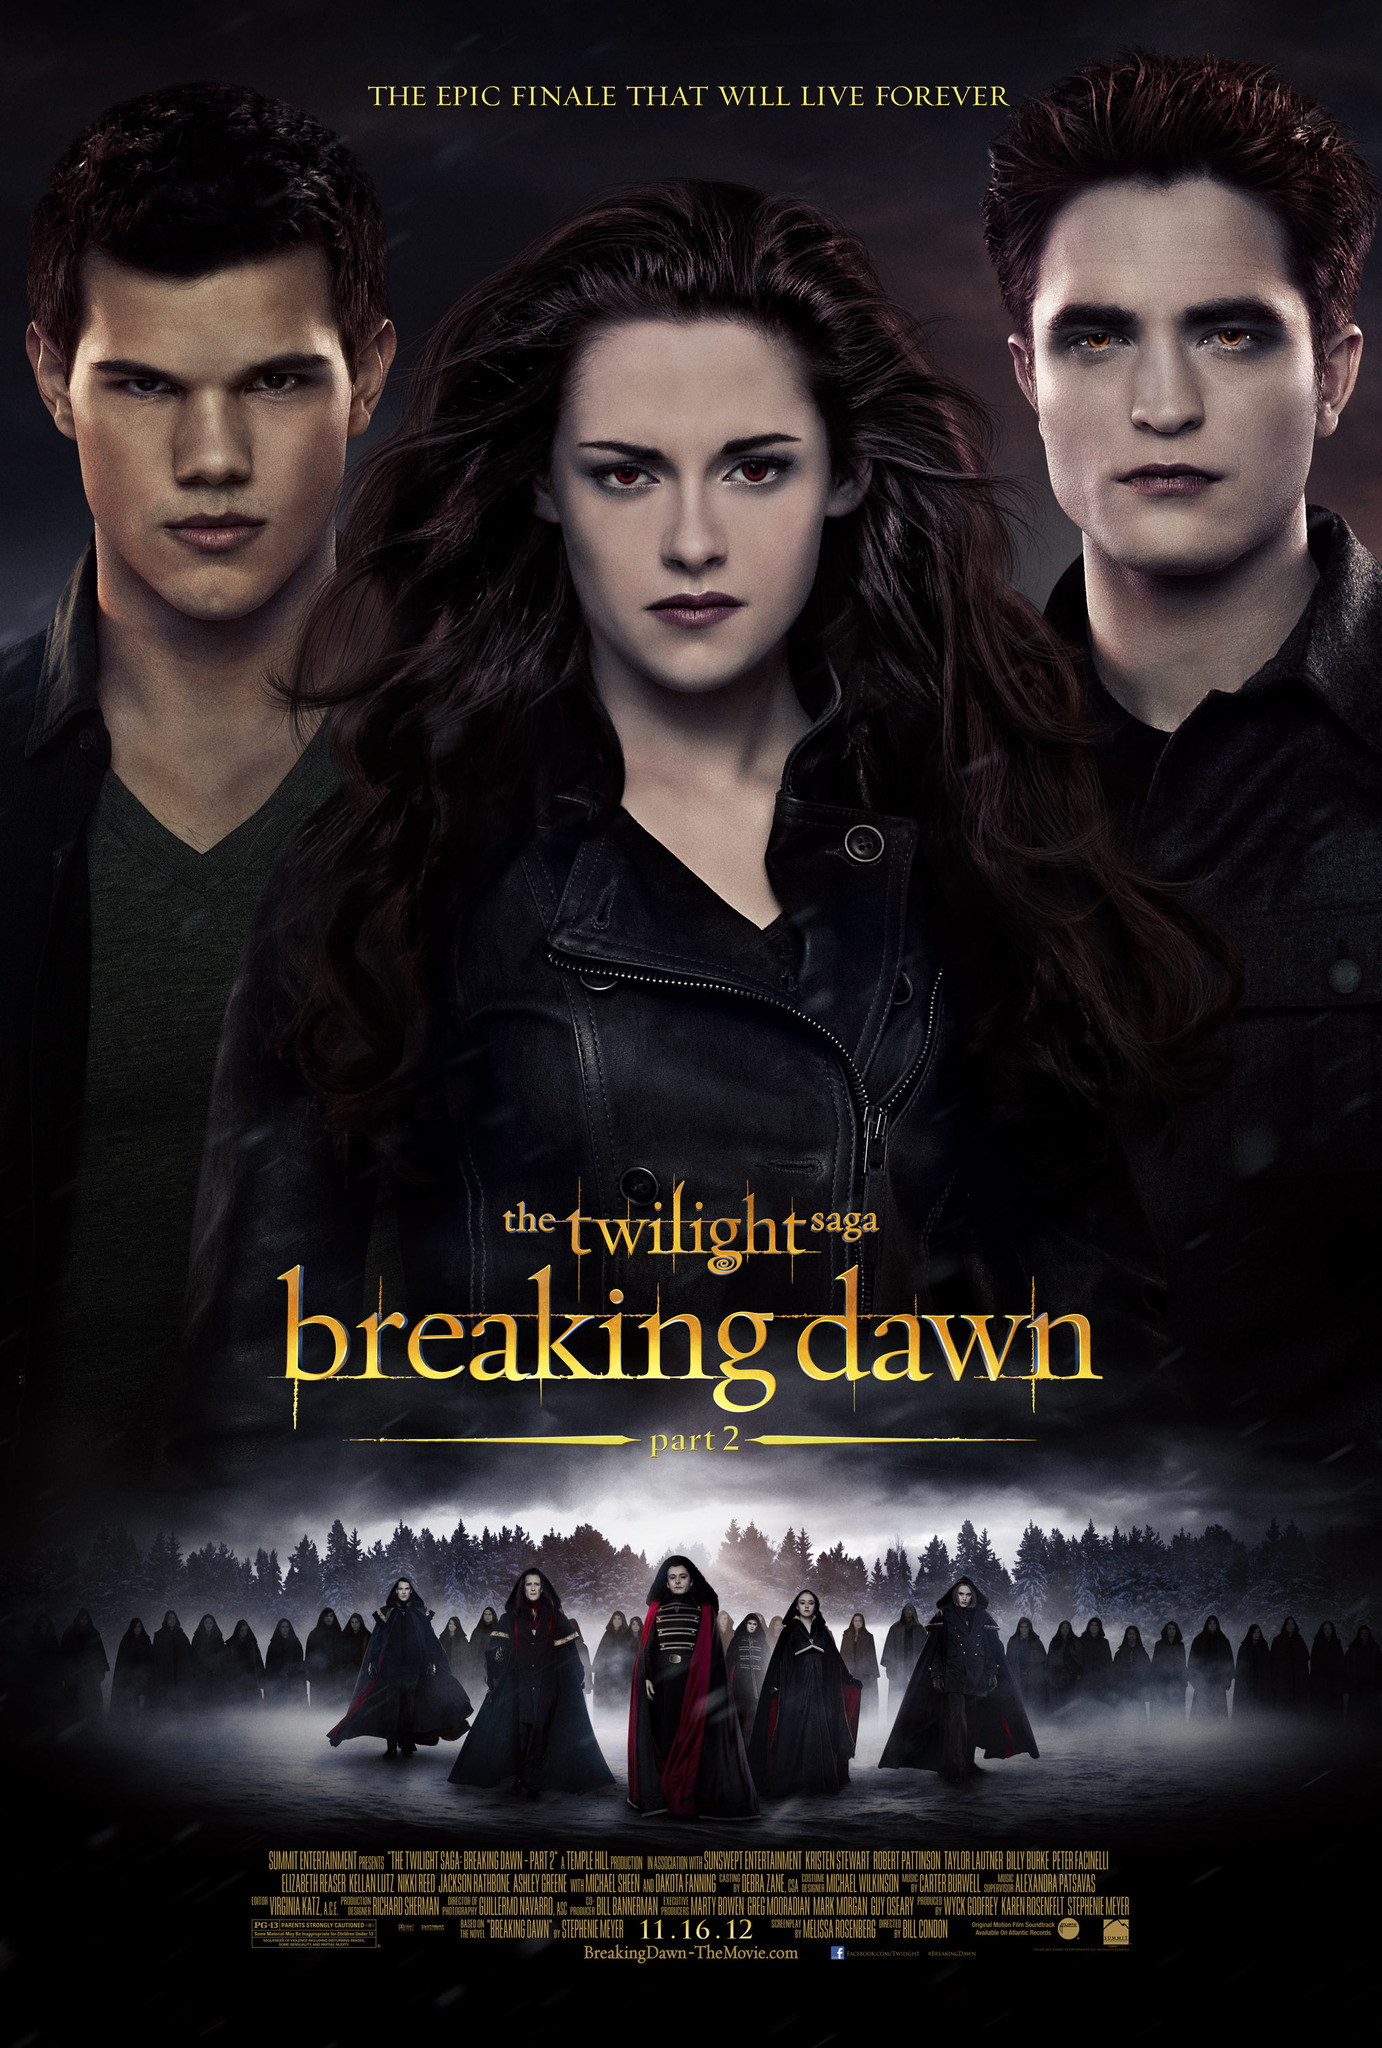 ดูหนังออนไลน์ฟรี The Twilight Saga Breaking Dawn Part 2 2012 แวมไพร์ ทไวไลท์ ซาก้า เบรคกิ้ง ดาวน์ ตอนที่ 2